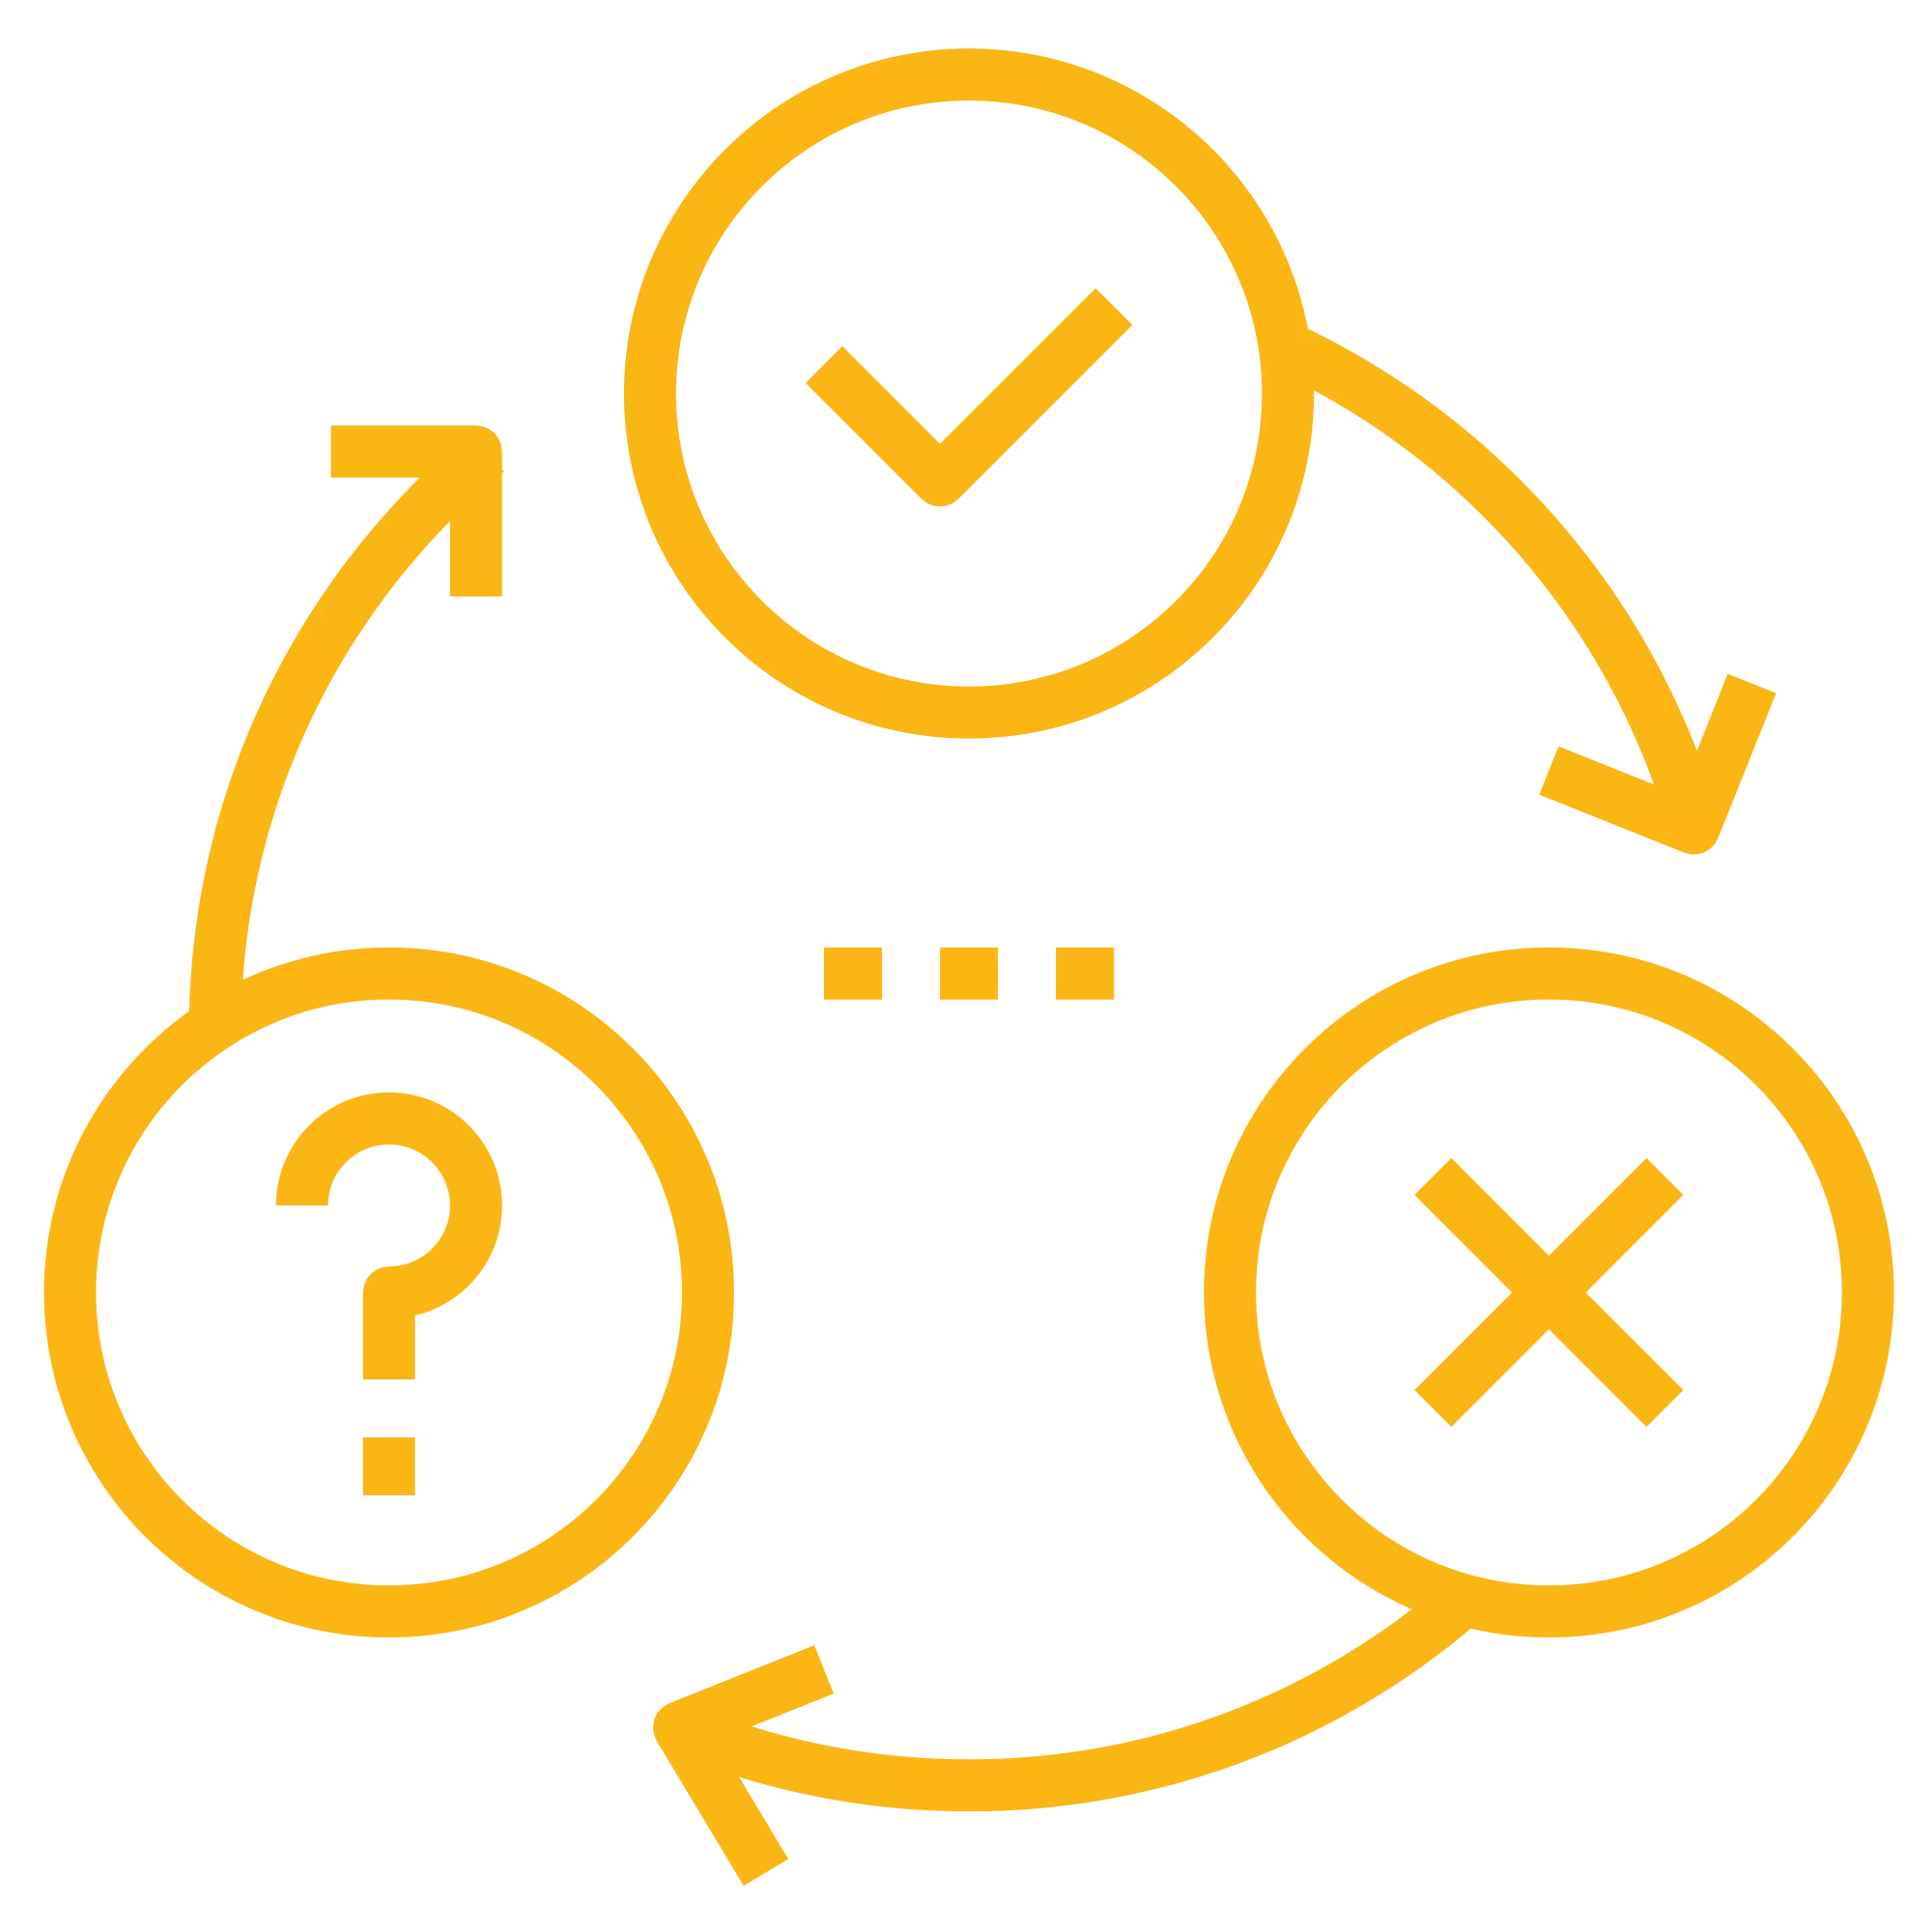 Capability Model Icons_Organizational_Change Management